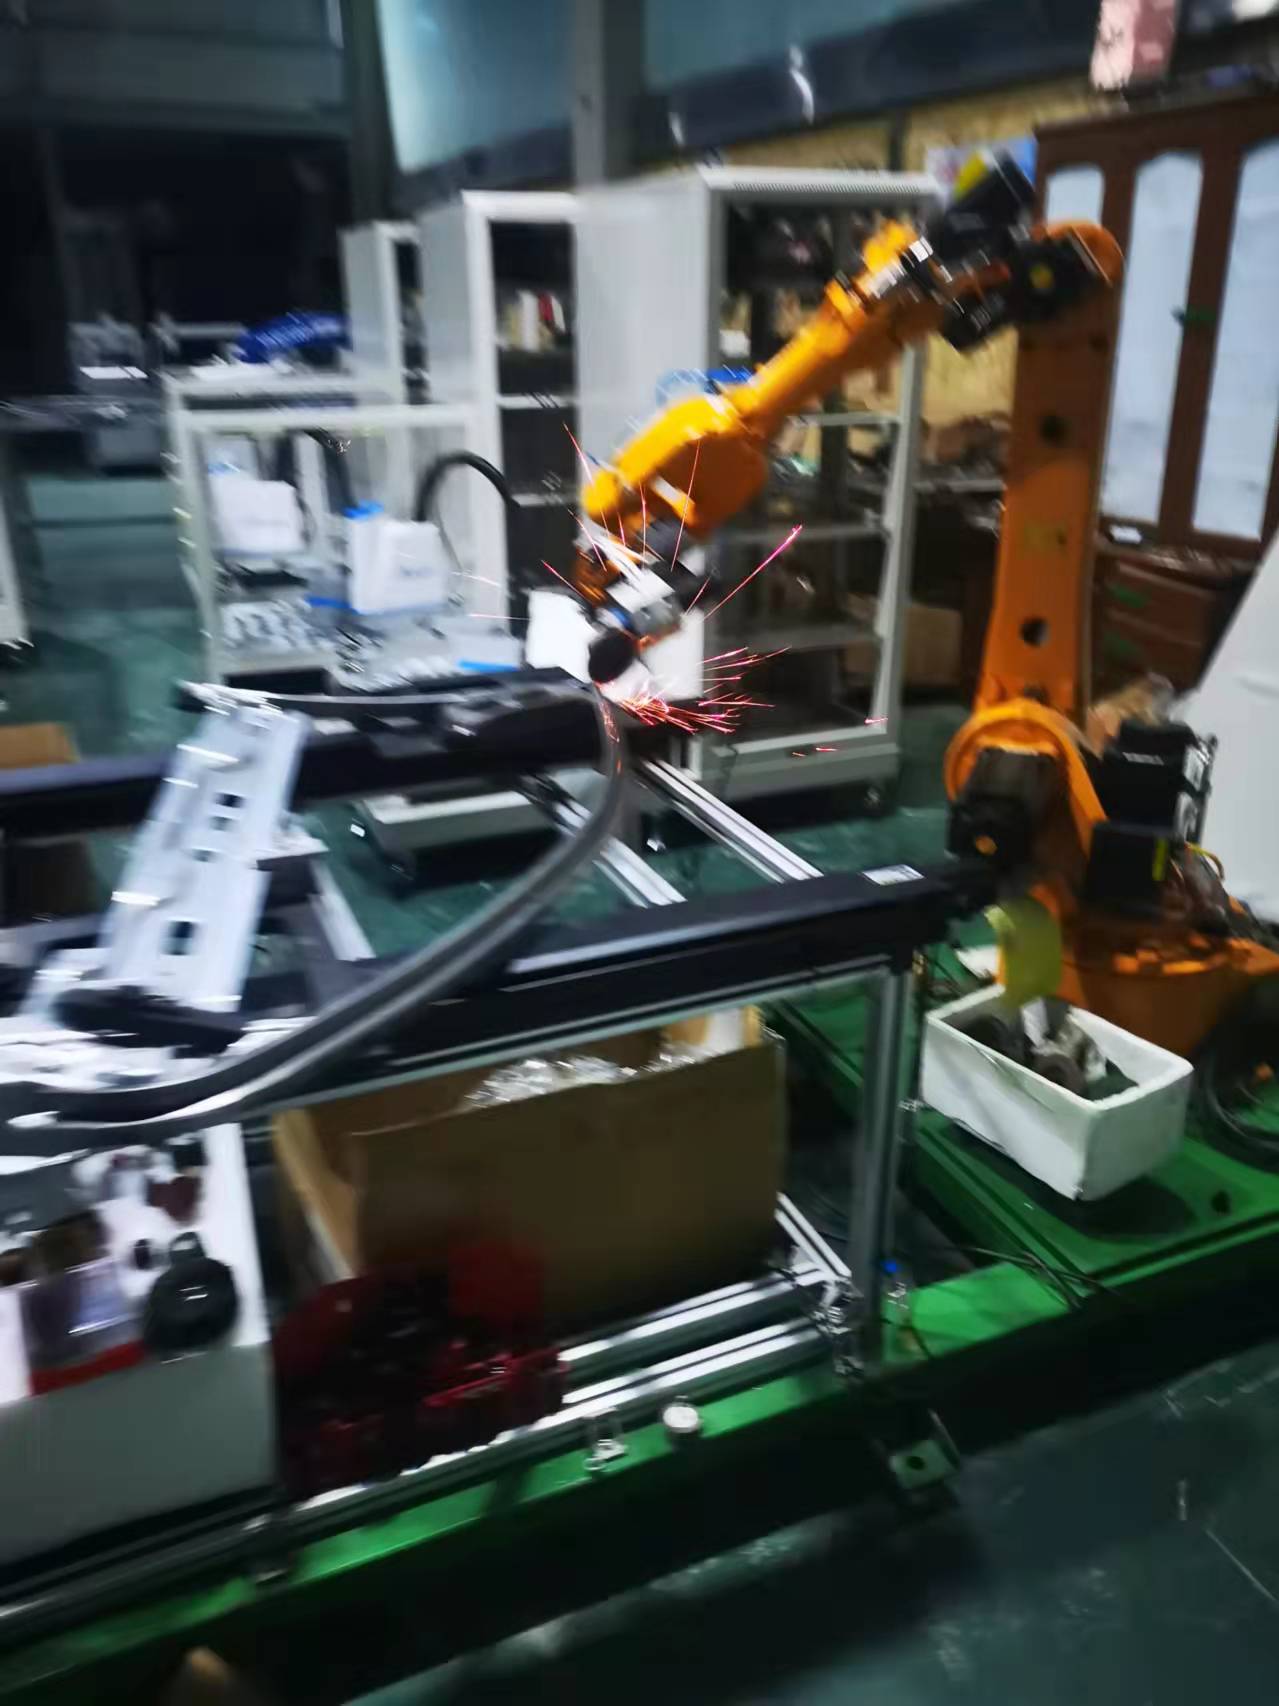 机器人打磨工具 打磨抛光机器人